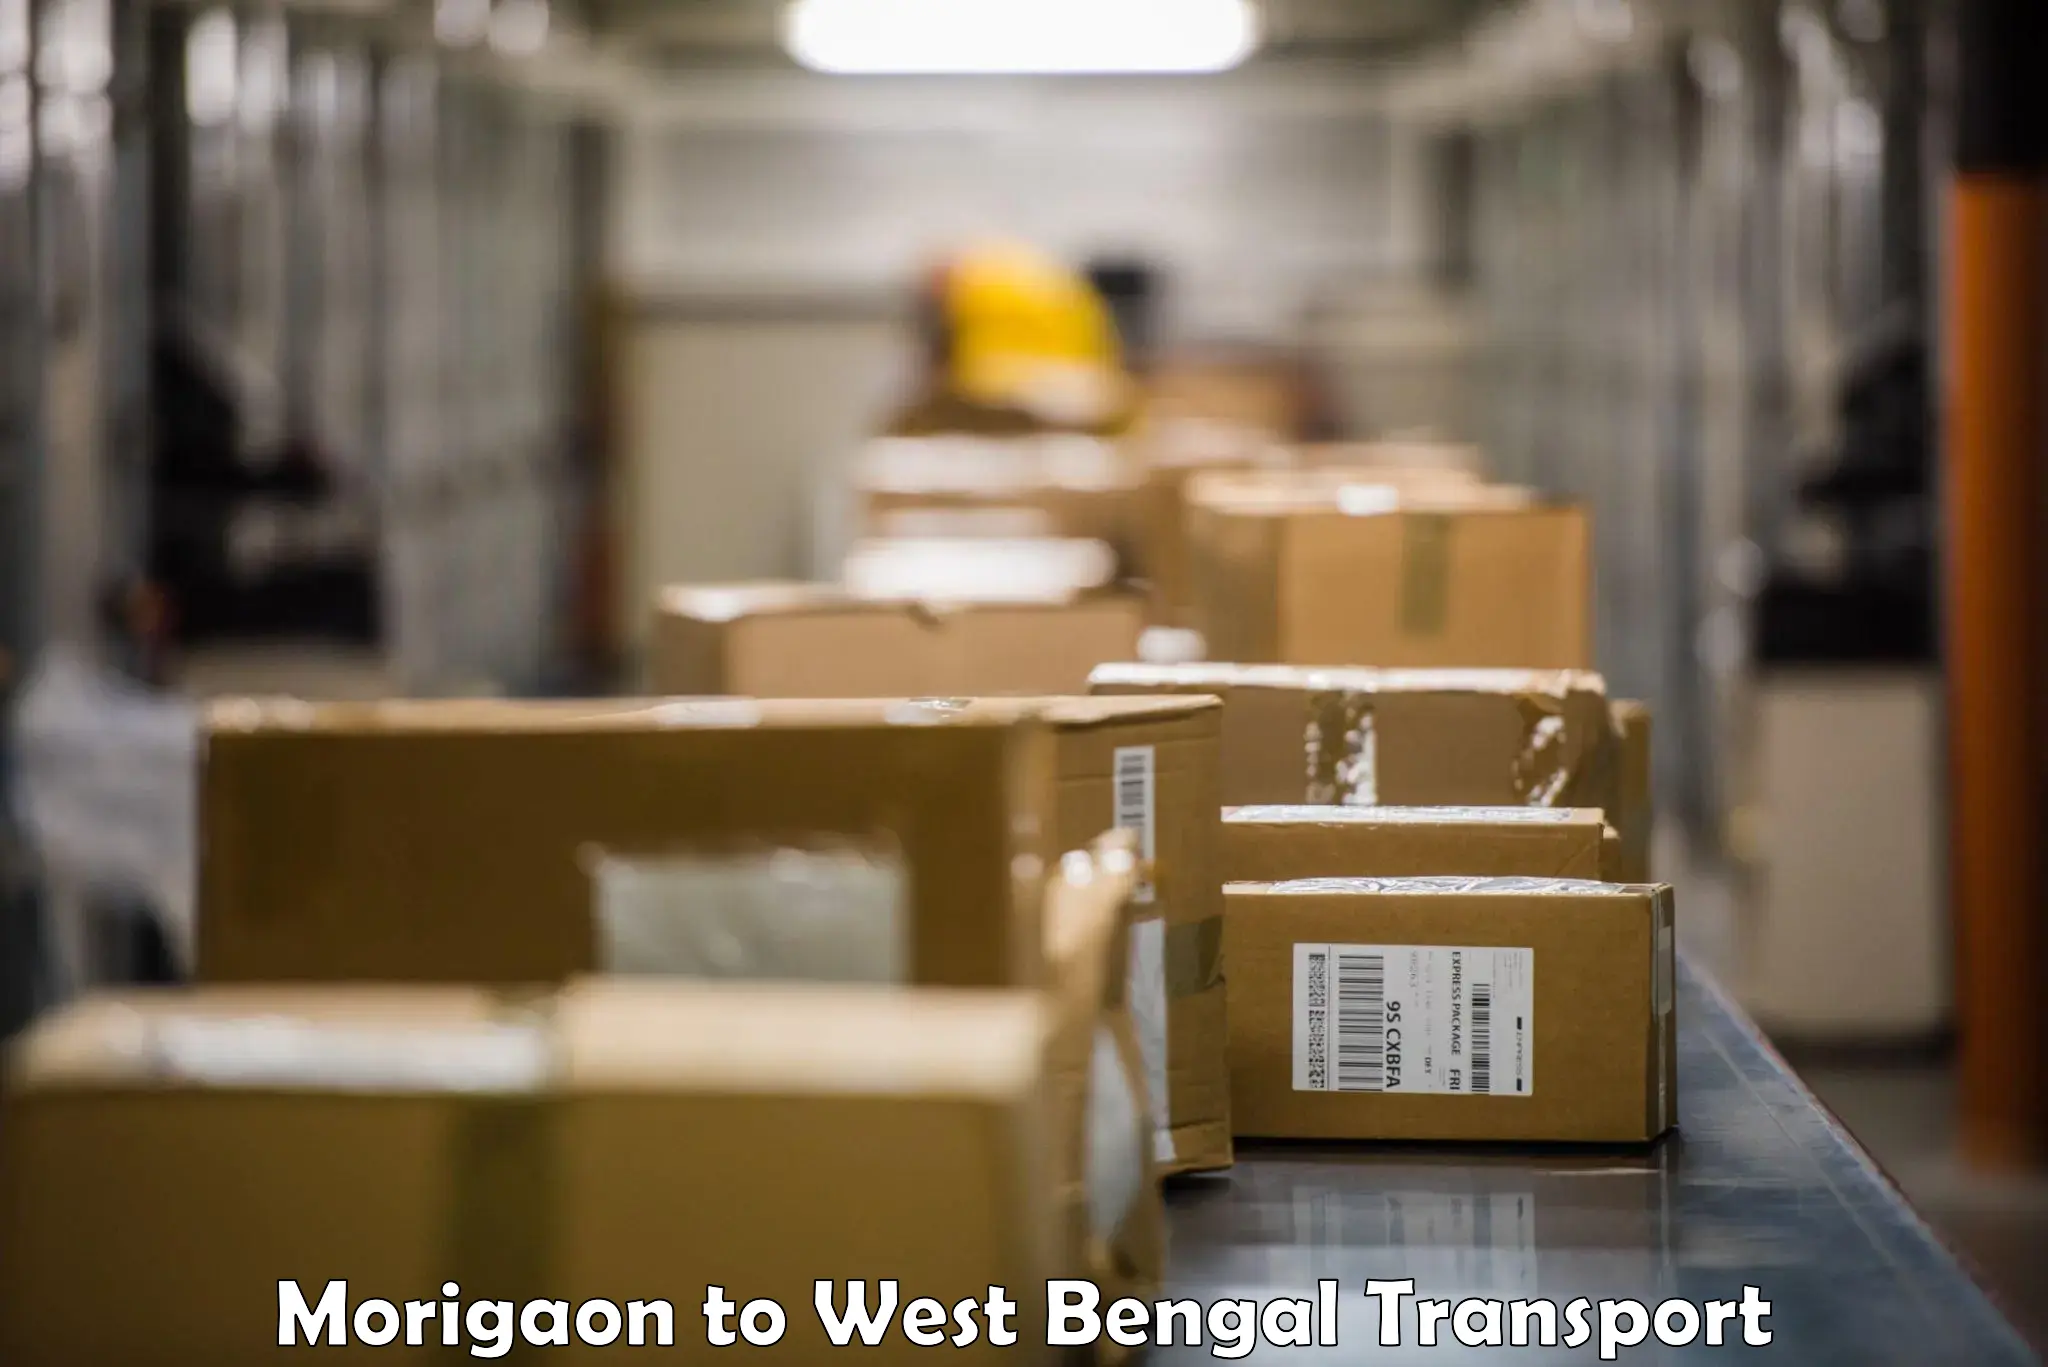 Furniture transport service Morigaon to Jangipur